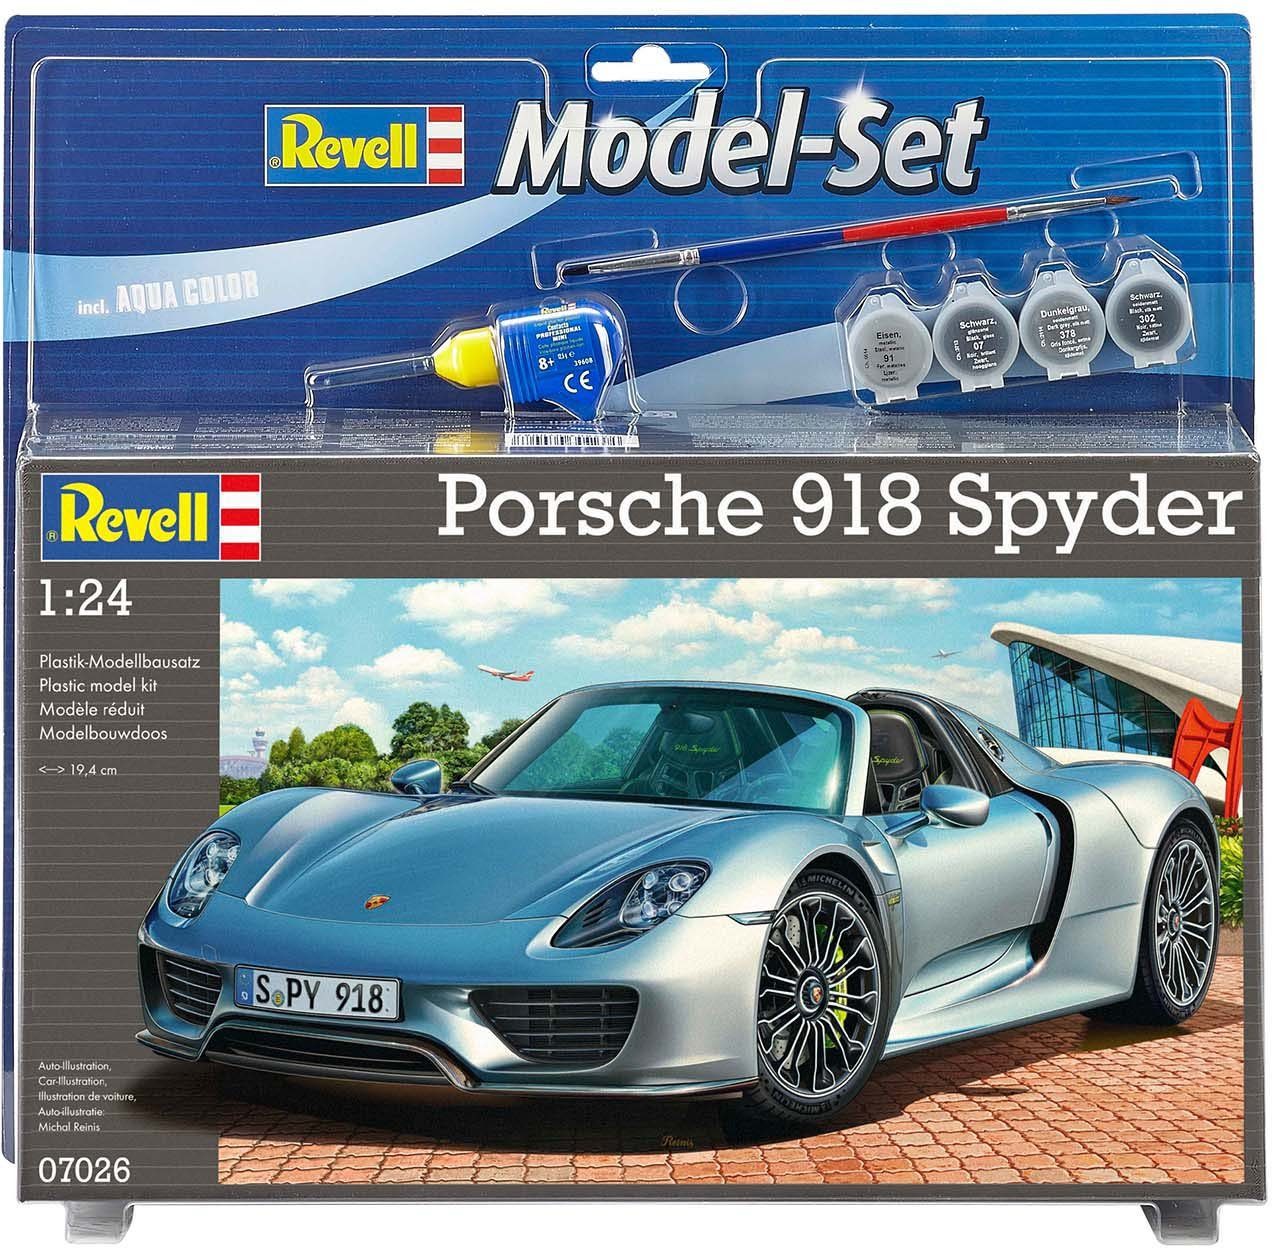 Revell® Modellbausatz Porsche 918 Spyder, Maßstab 1:24, Made in Europe,  Inklusive Kleber, Pinsel und Hauptfarben